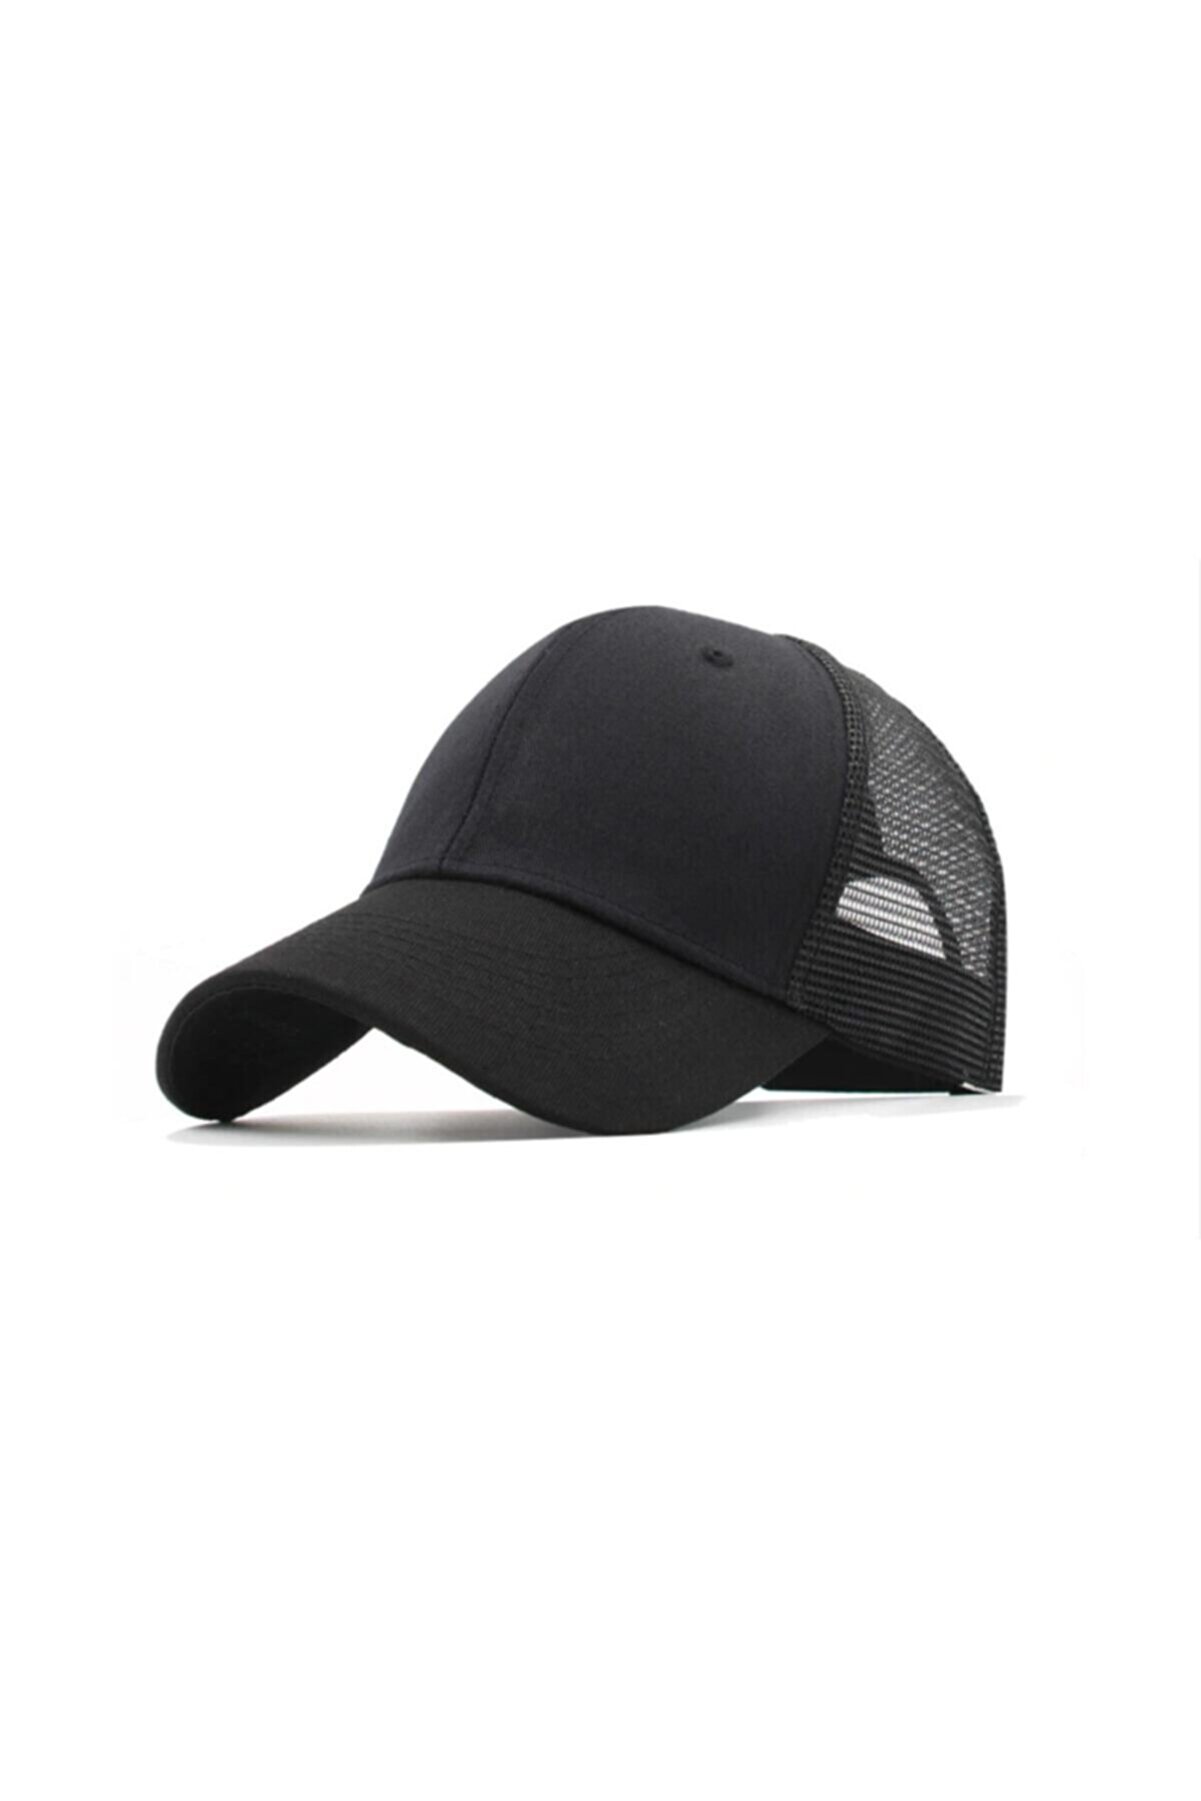 PRC şapka Yazlık Örme Fileli Düz Renk Arkası Ayaralanabilir Şapka Kepler